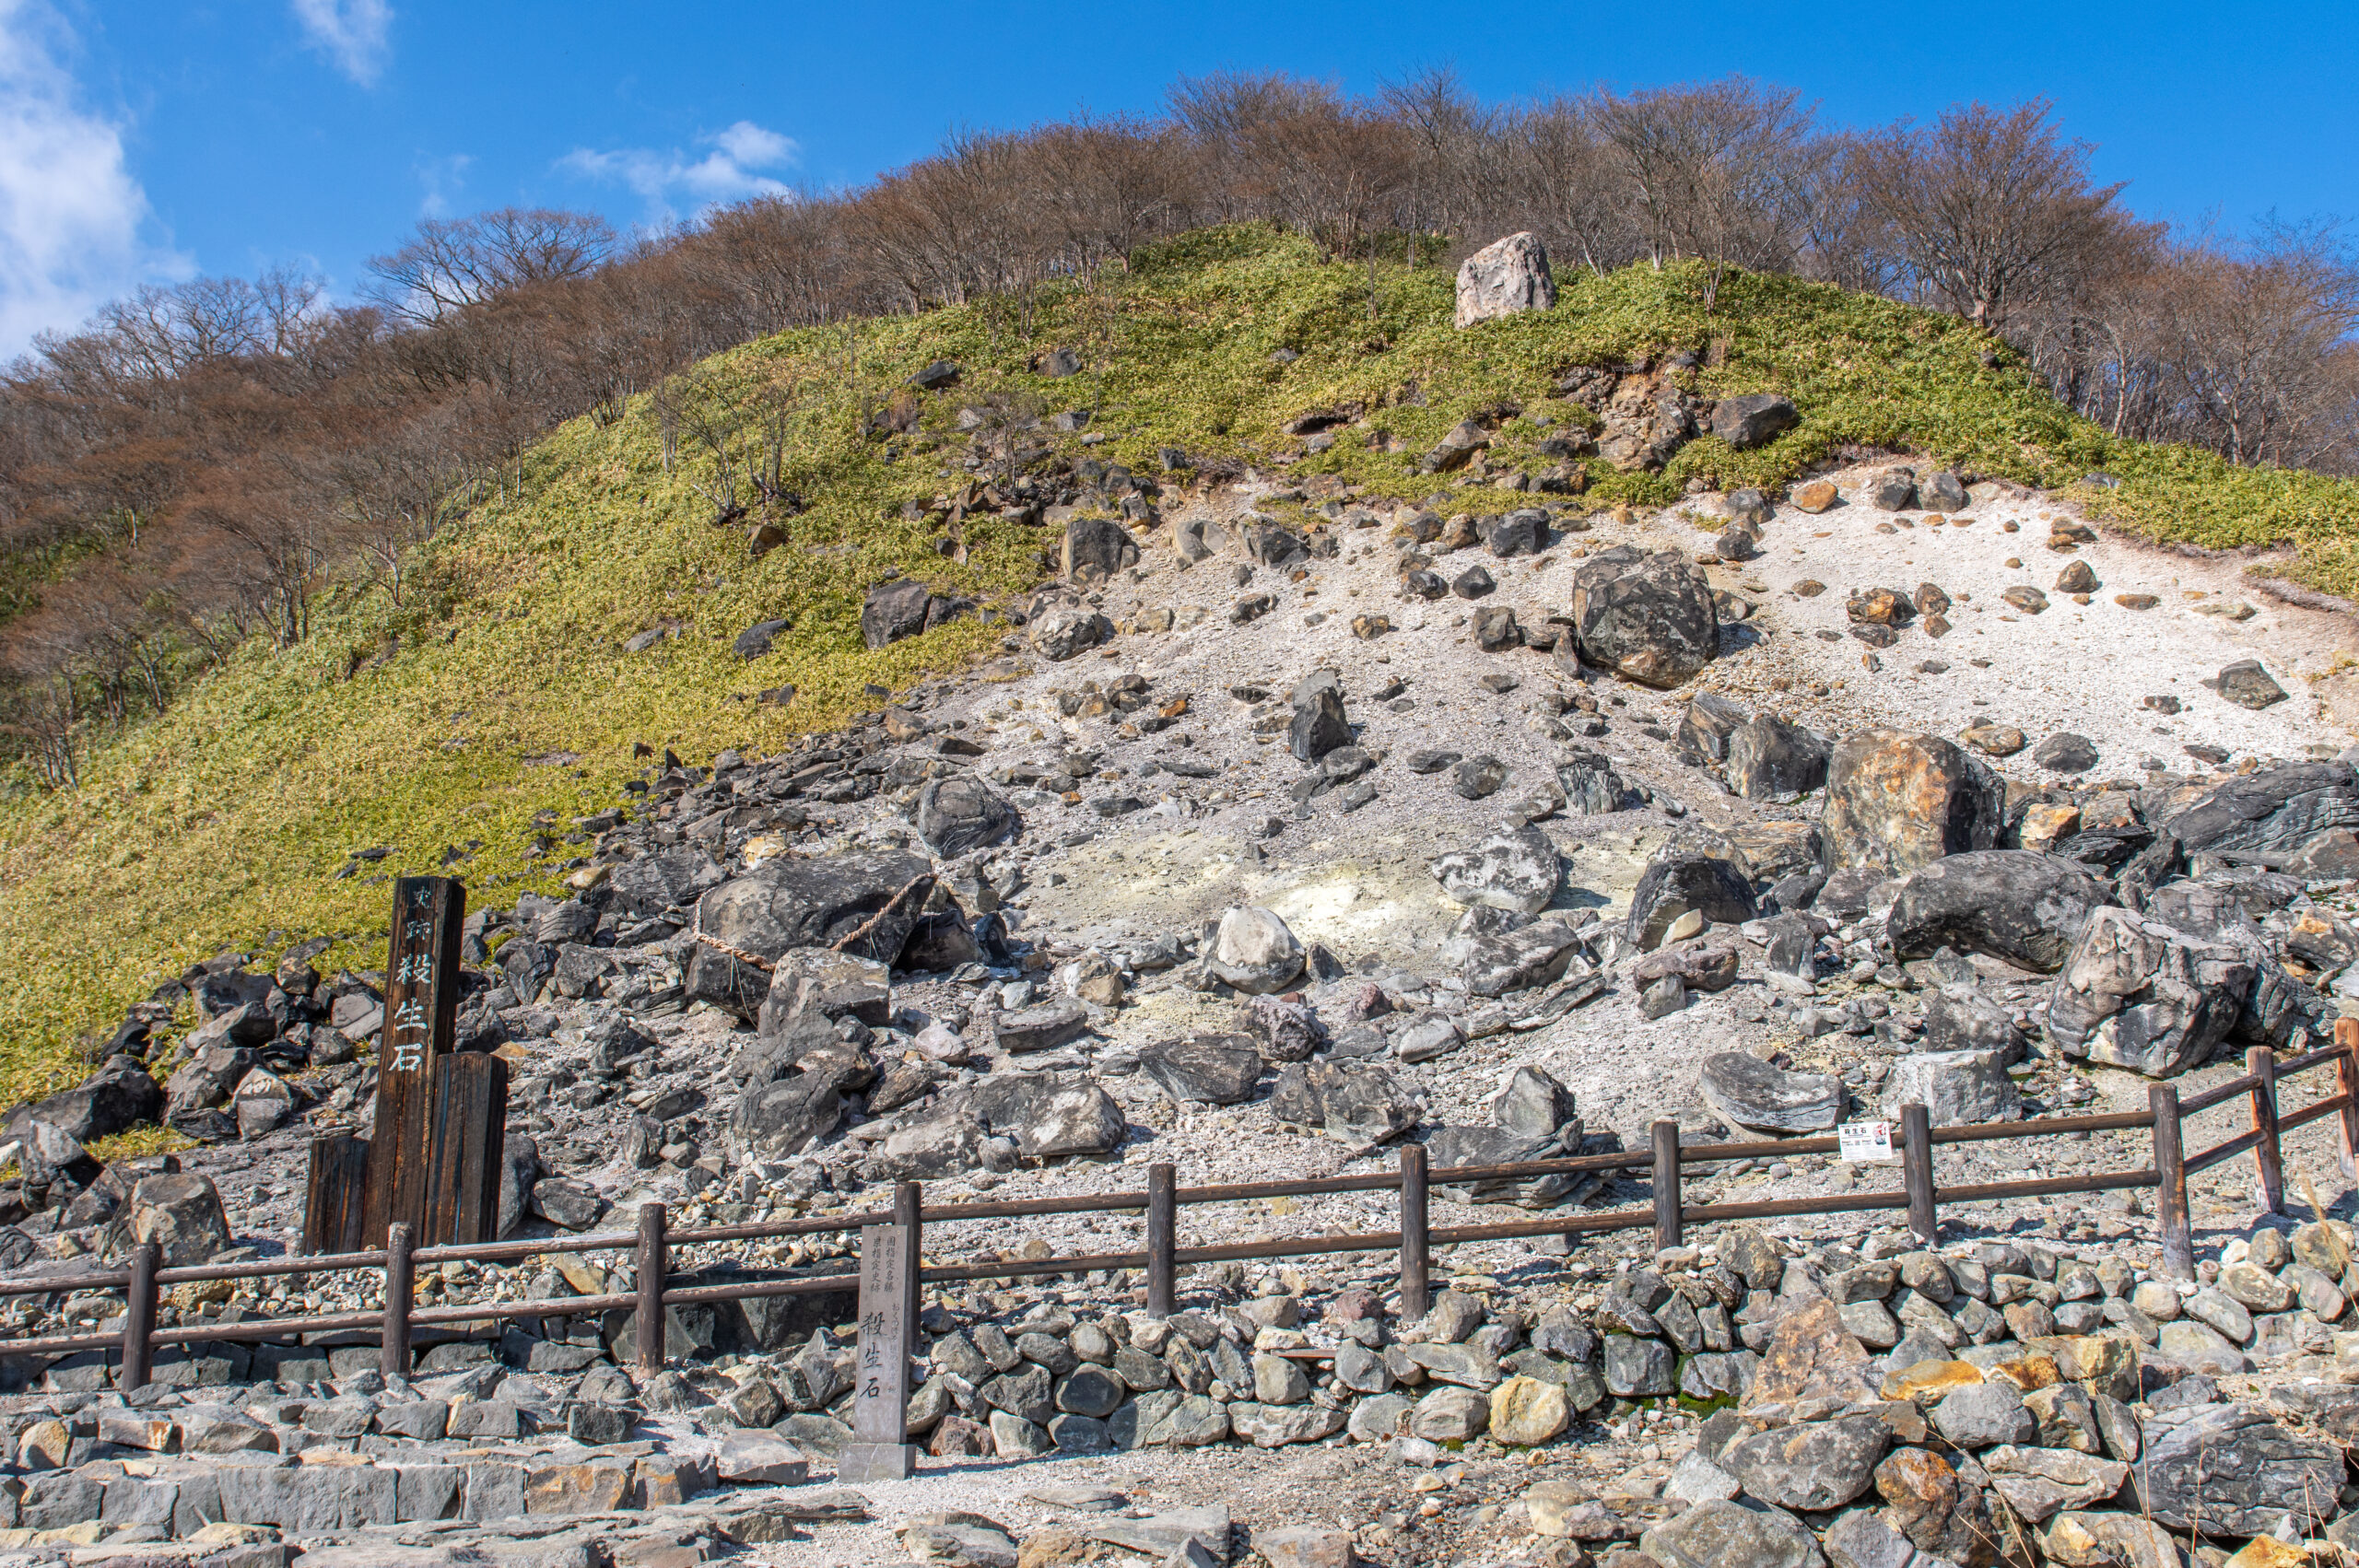 那須ロープウェイだけで那須高原の旅を終わらせるな。栃木県の殺生石も含めた旅ルート。